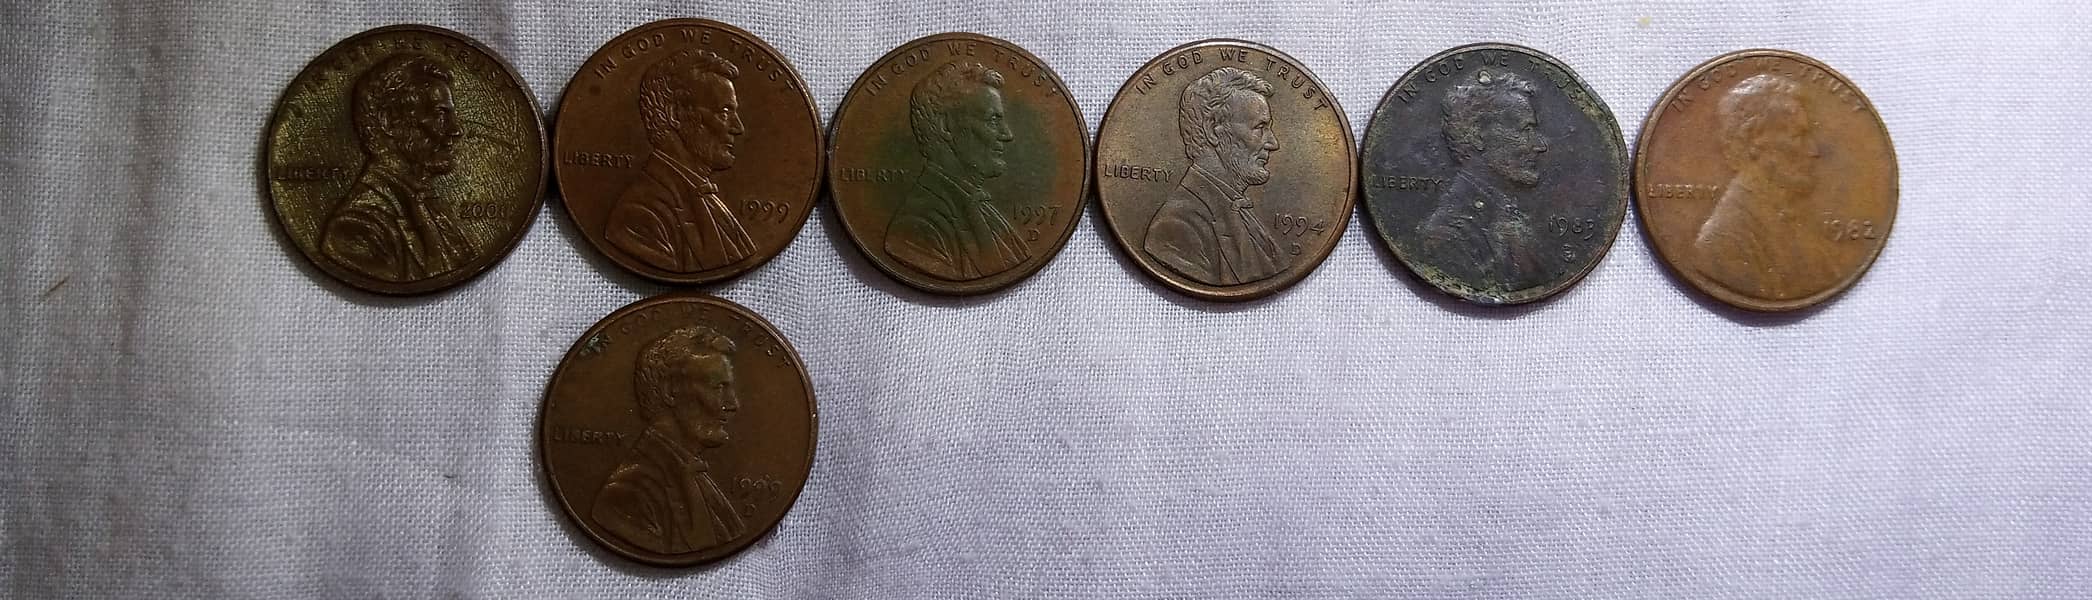 Antique Coin's 2